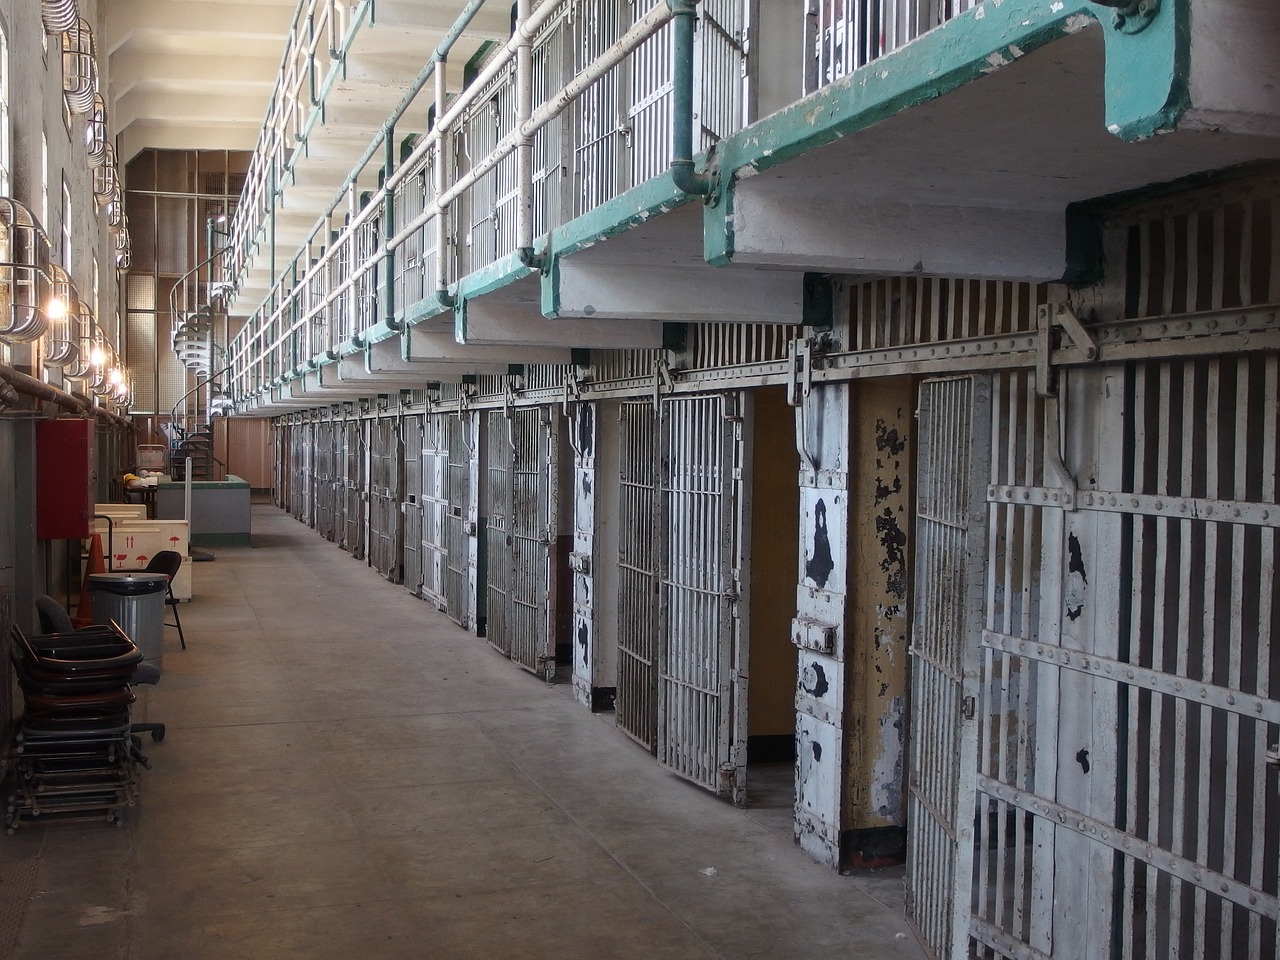 Ουαλία: Υπάλληλος φυλακής έκανε τηλεφωνικό σεξ με κρατούμενο - Διατηρούσαν σχέση εξ αποστάσεως